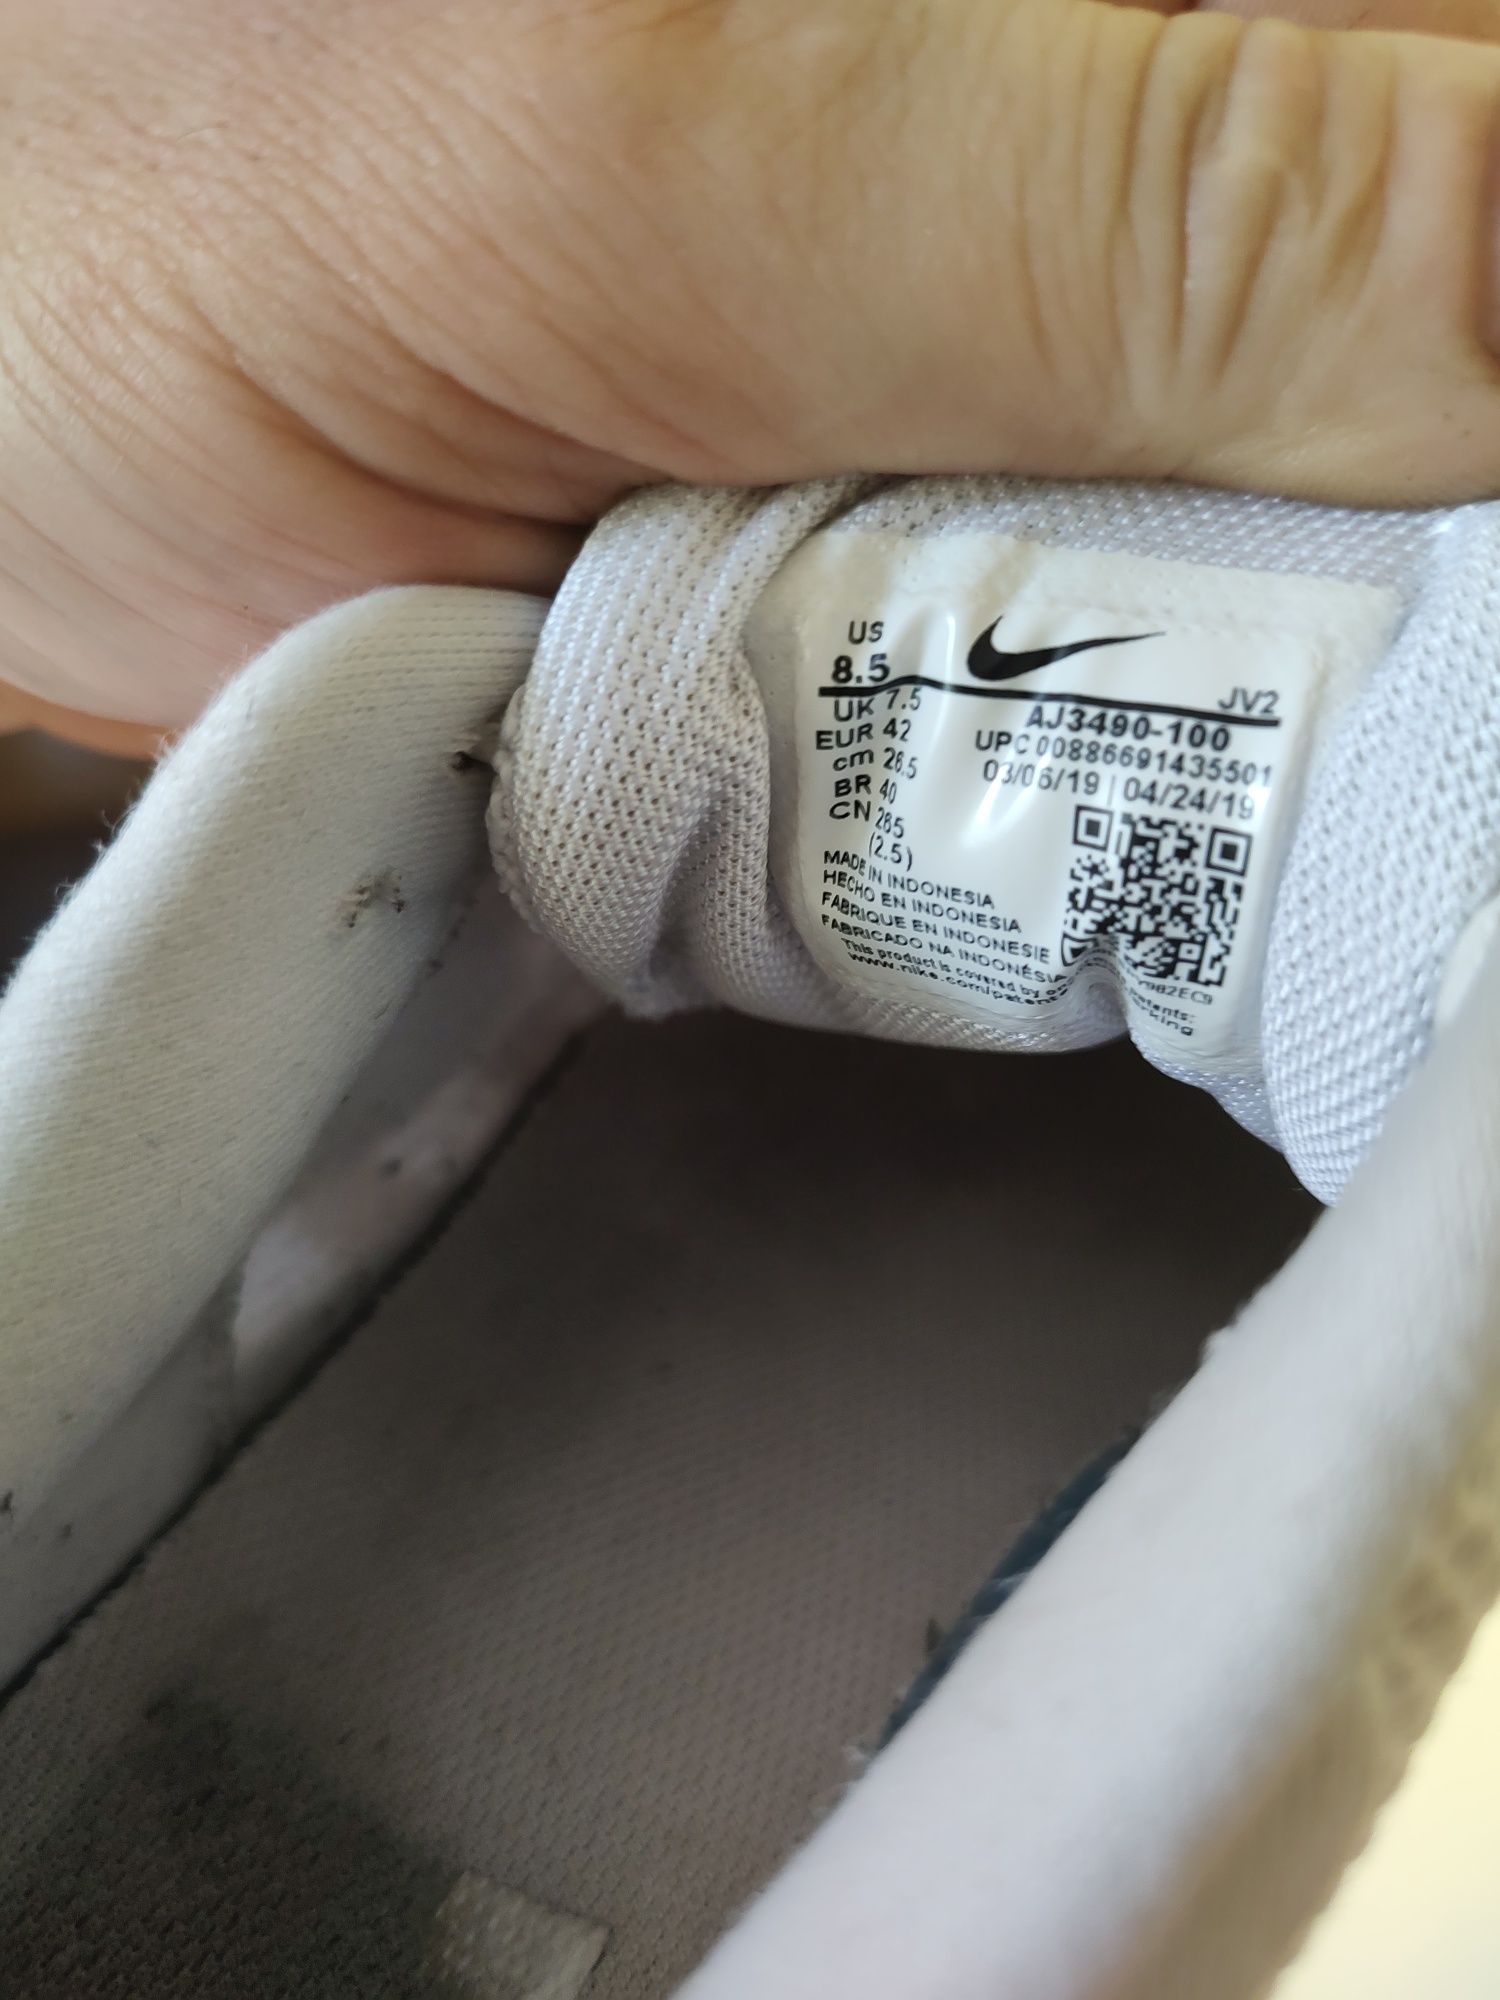 Buty Nike Revolution 4. Rozmiar 42 wkładka 26.5cm